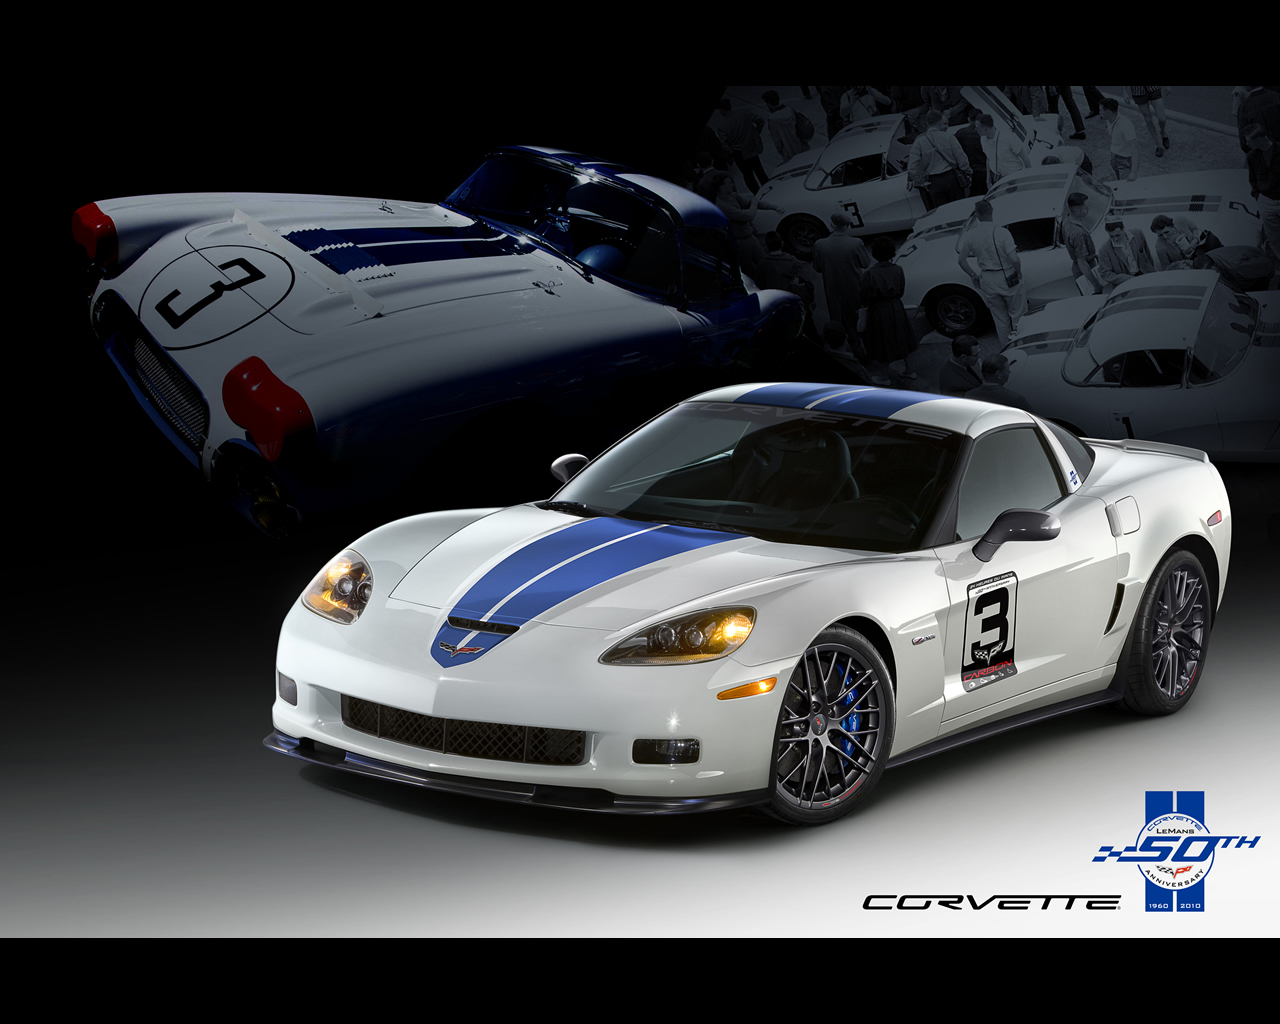 Wallpaper Corvette C2 Racing Le Mans